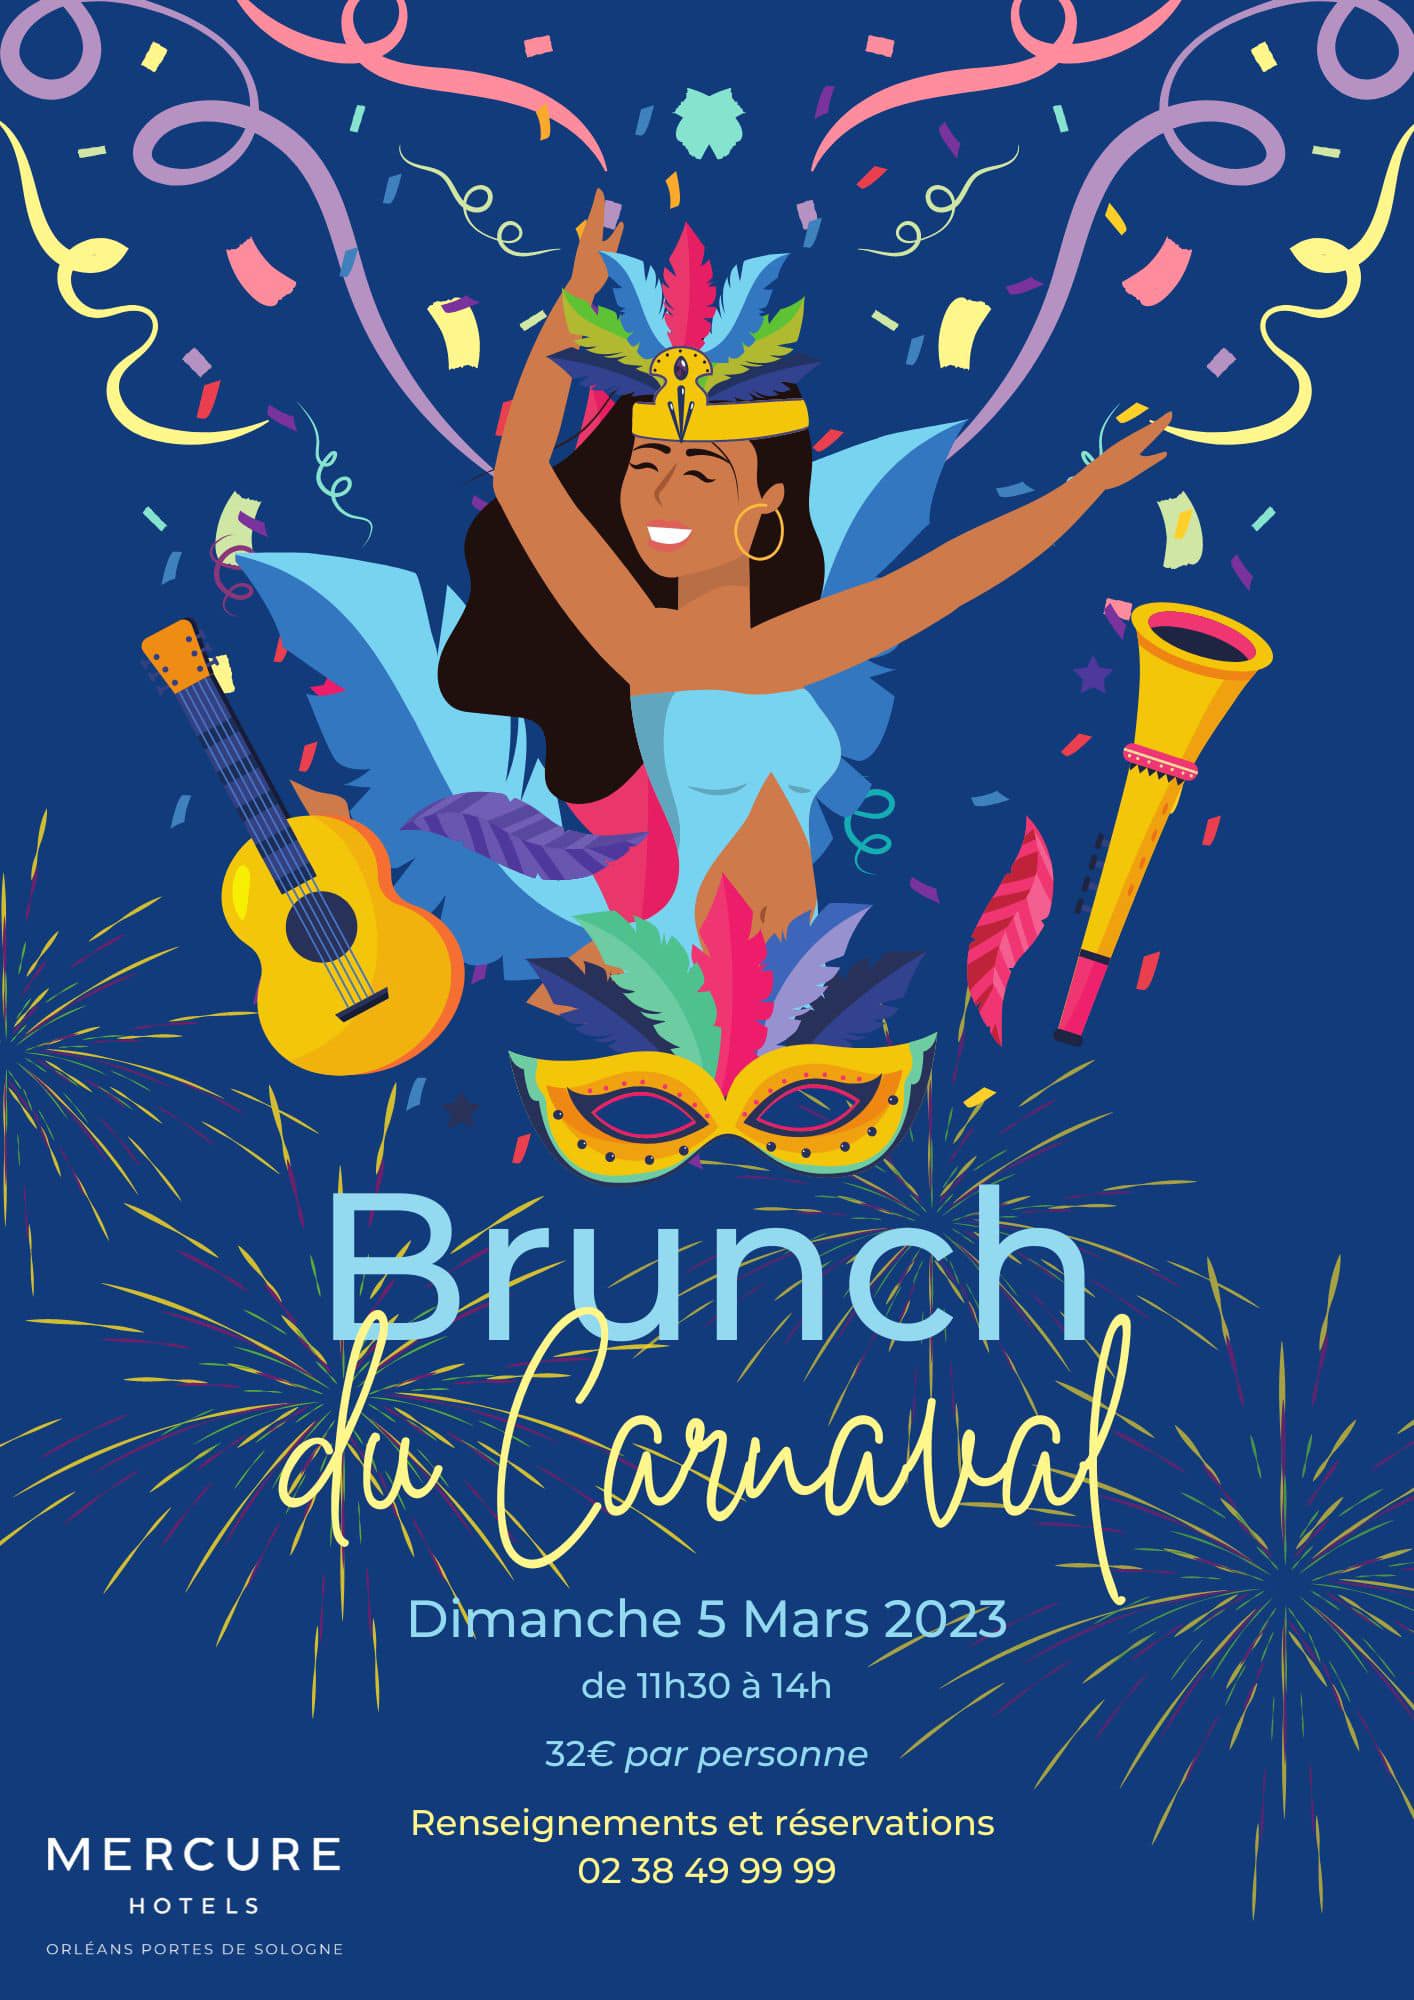 Brunch carnaval 05 03 2023 